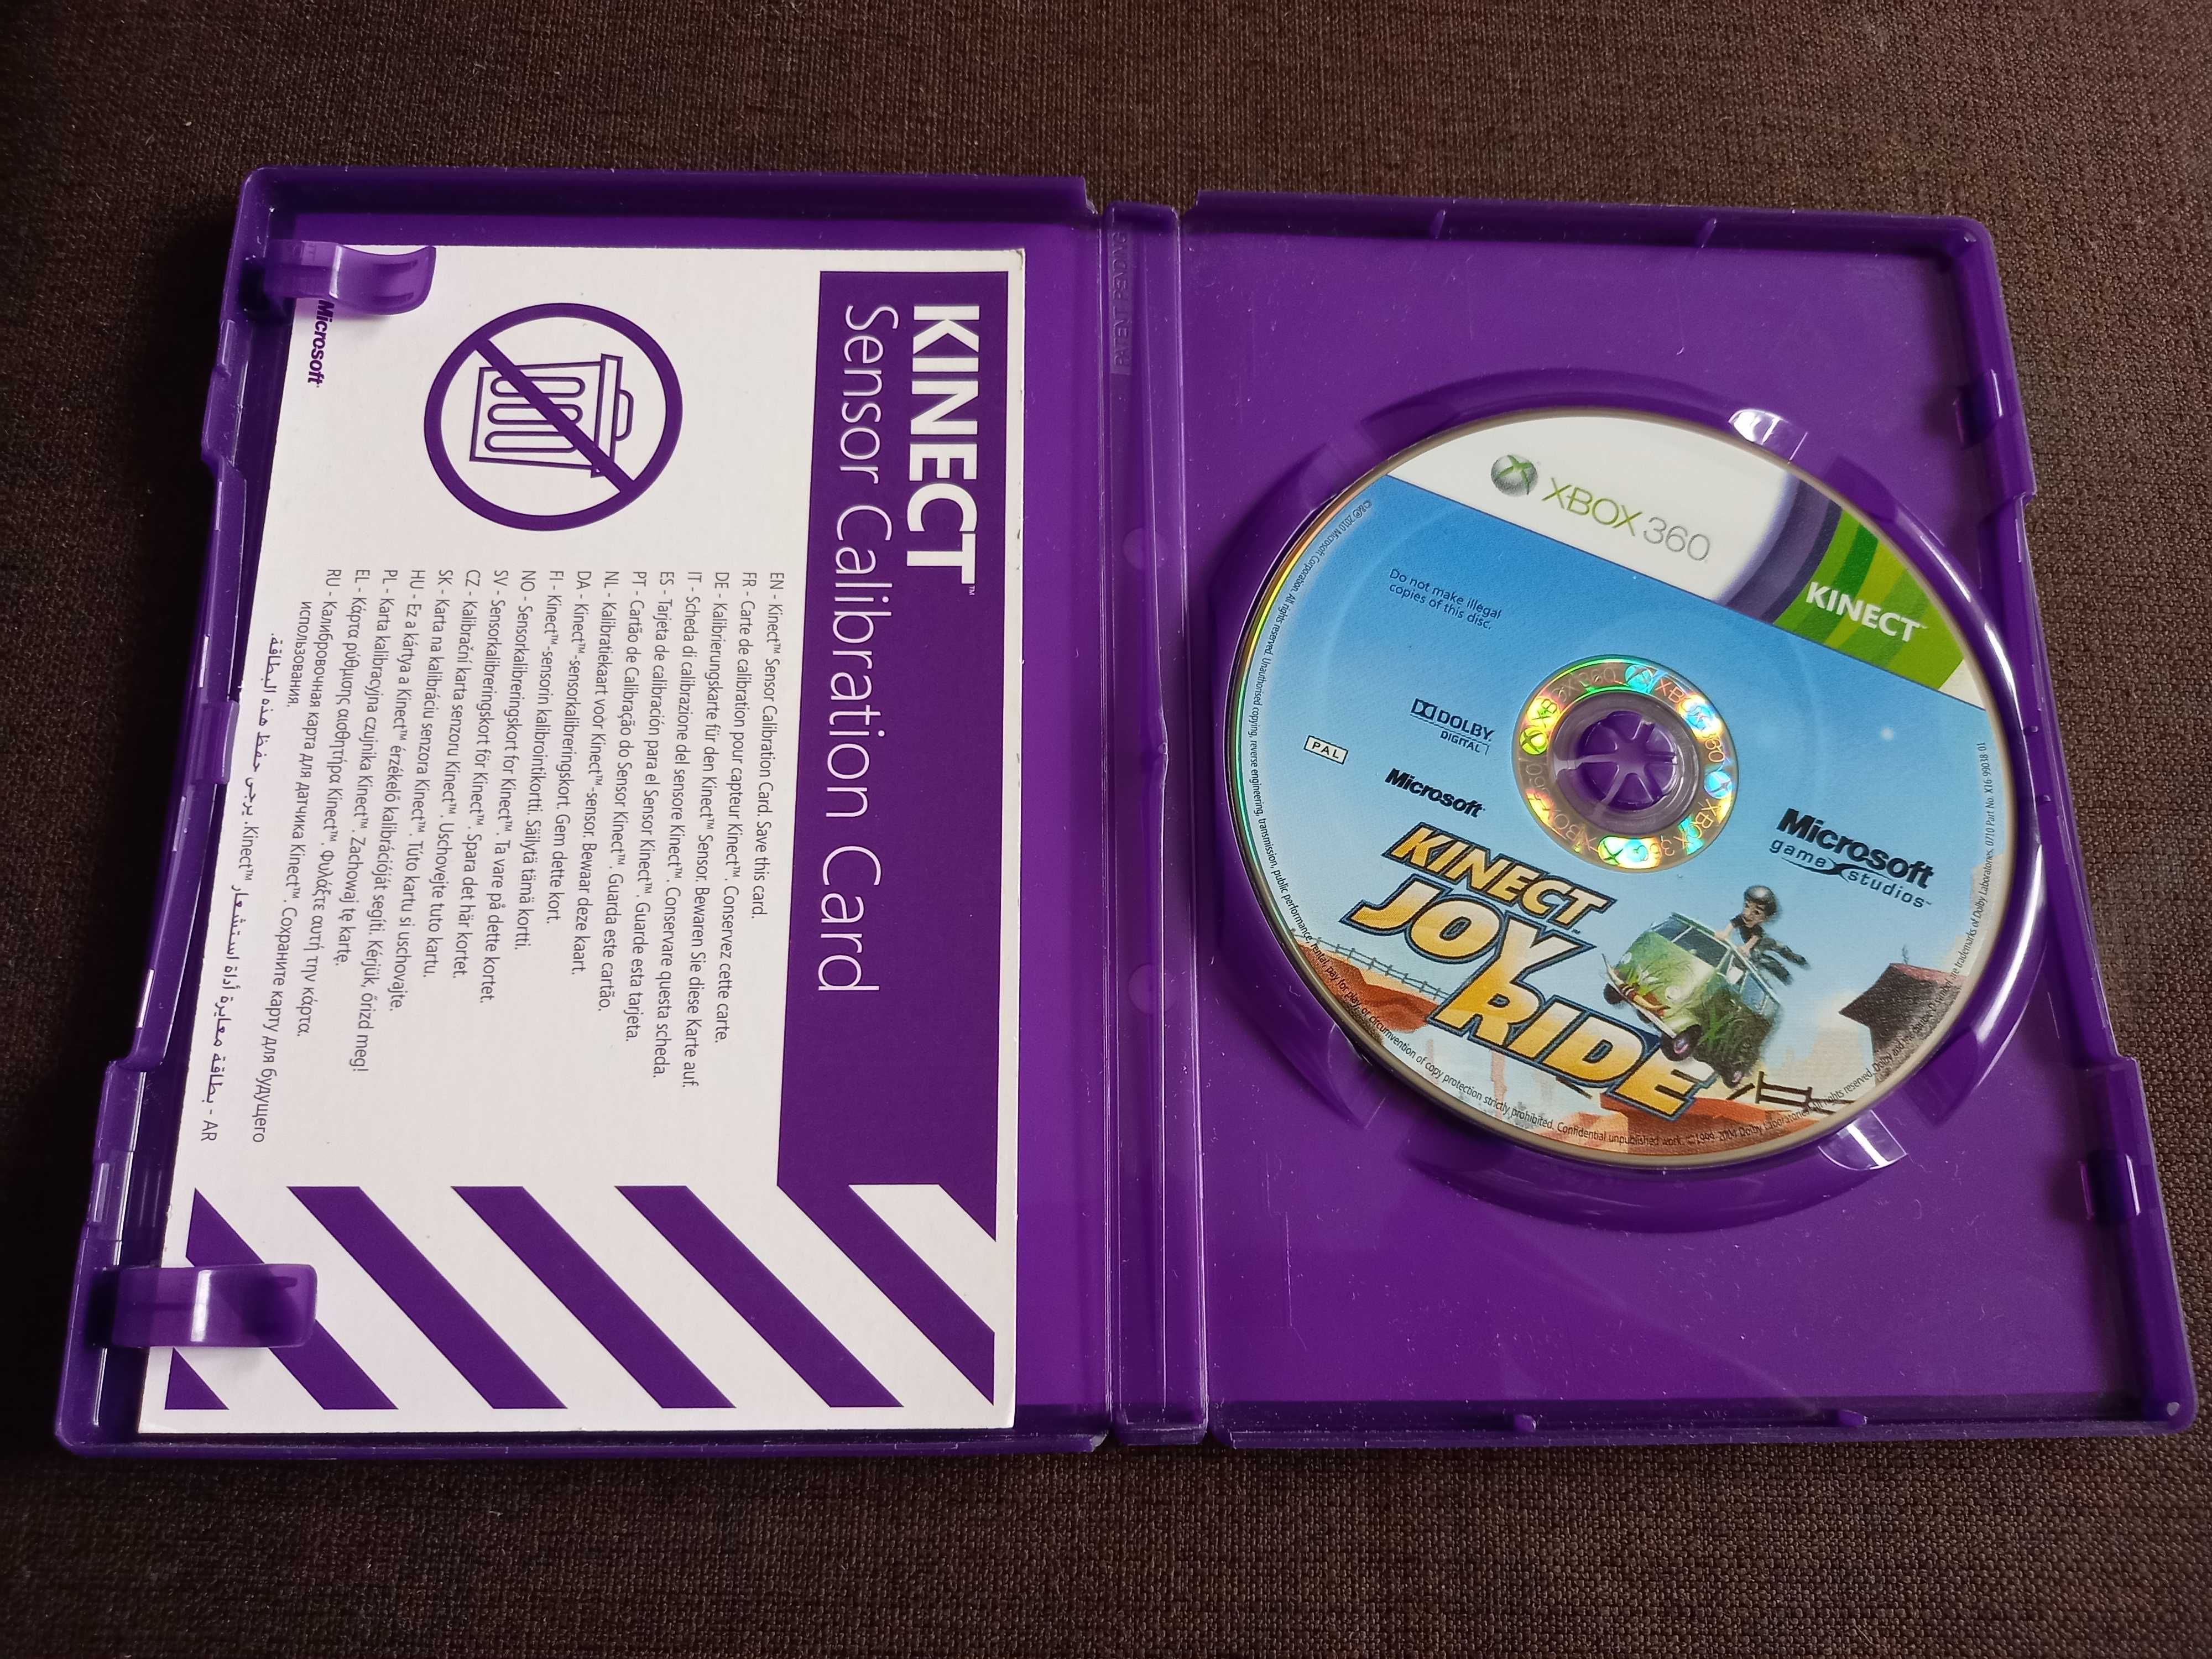 Gra Kinect Joy Ride na xbox 360 Polska wersja!!!